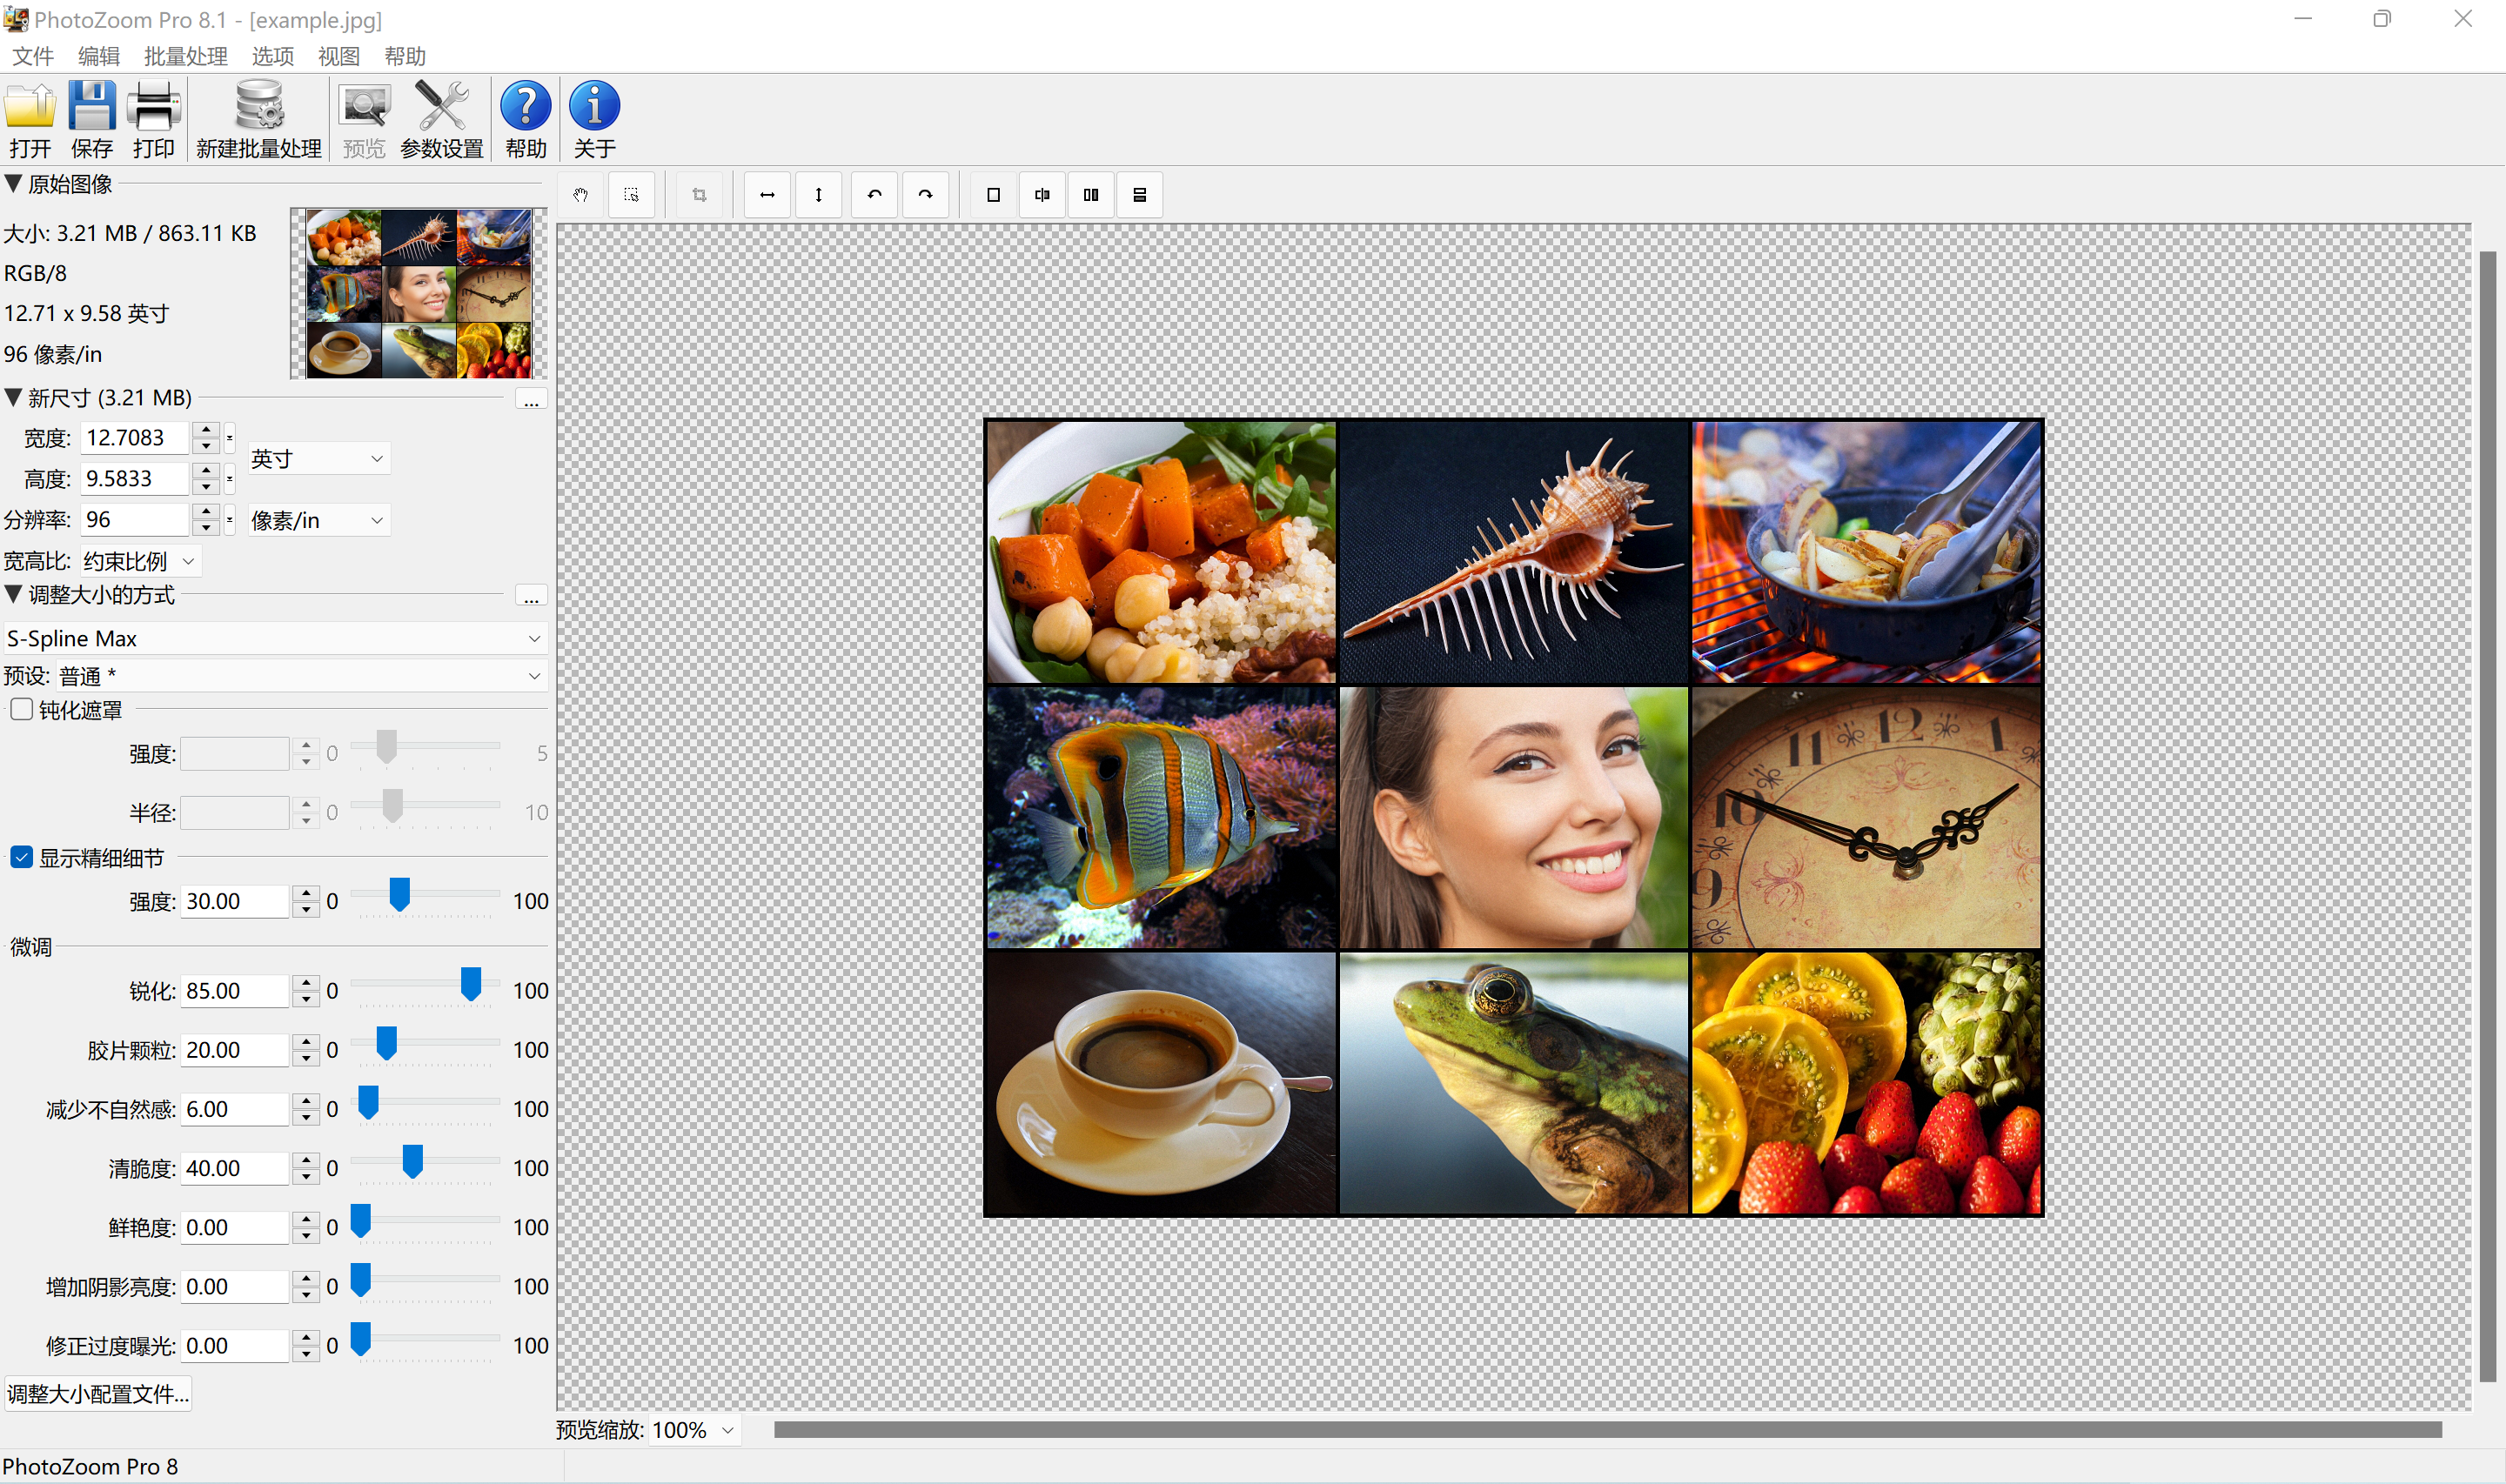 图像无损放大 PhotoZoom Pro v8.1.0 for Windows/ v7.1 Mac